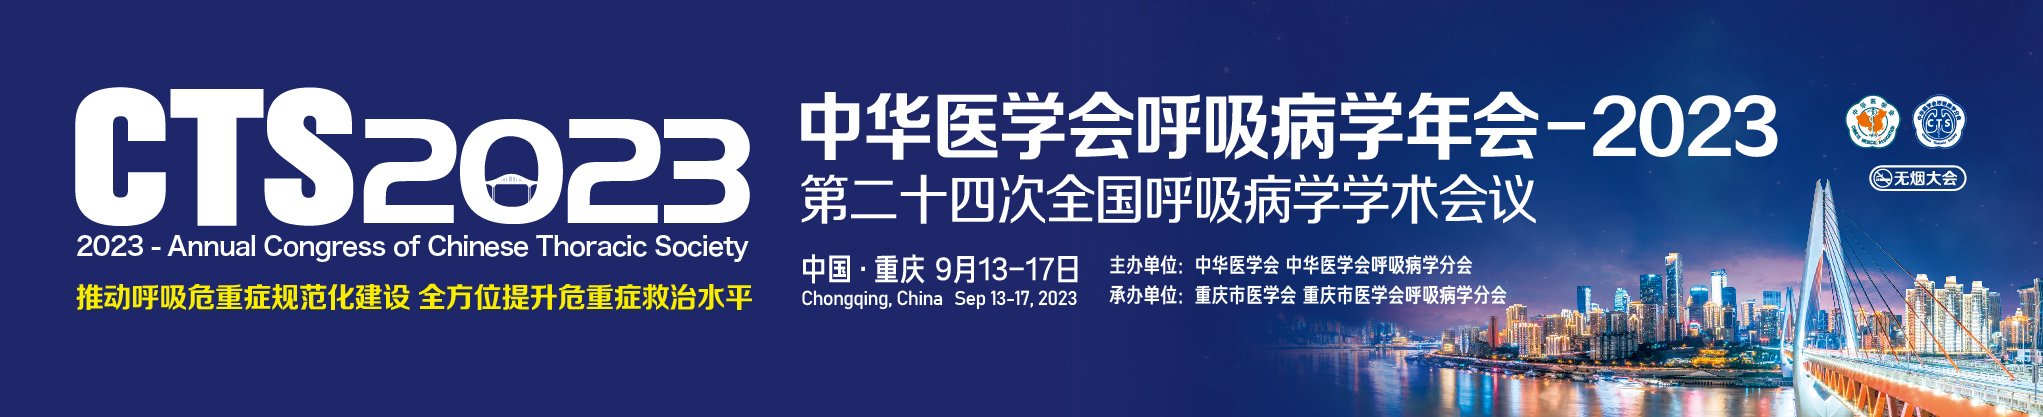 中华医学会呼吸病学年会-2023 (第二十四次全国呼吸病学学术会议)